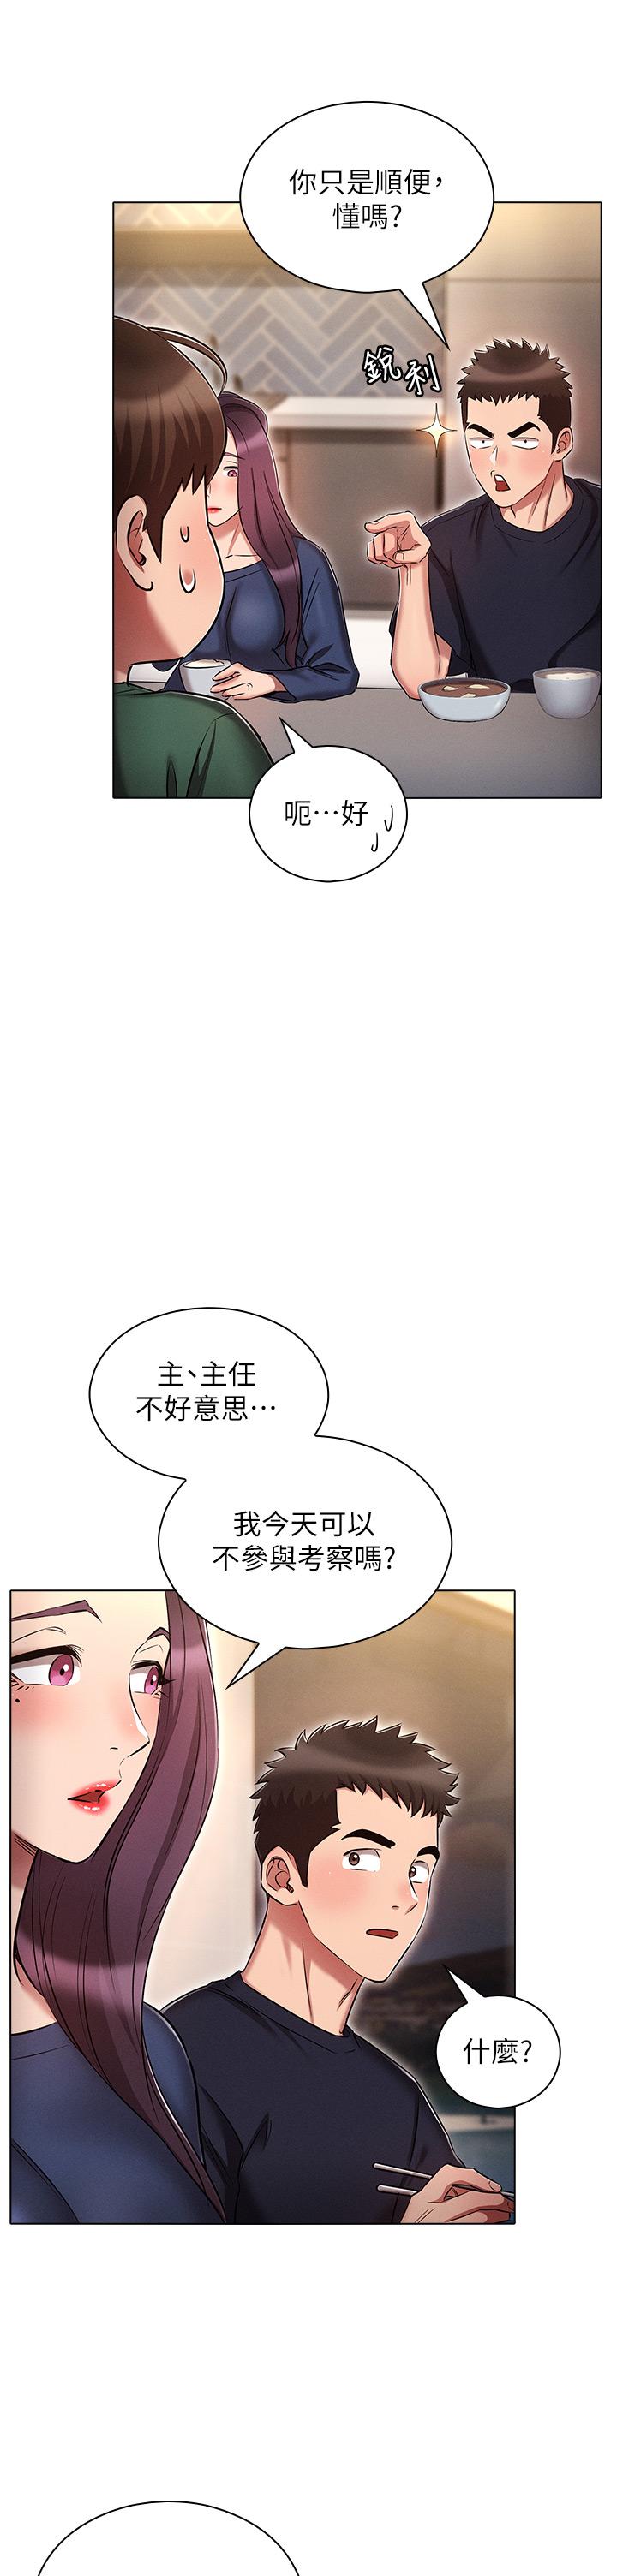 韩国漫画鲁蛇的多重宇宙韩漫_鲁蛇的多重宇宙-第21话-变态通话指令在线免费阅读-韩国漫画-第17张图片